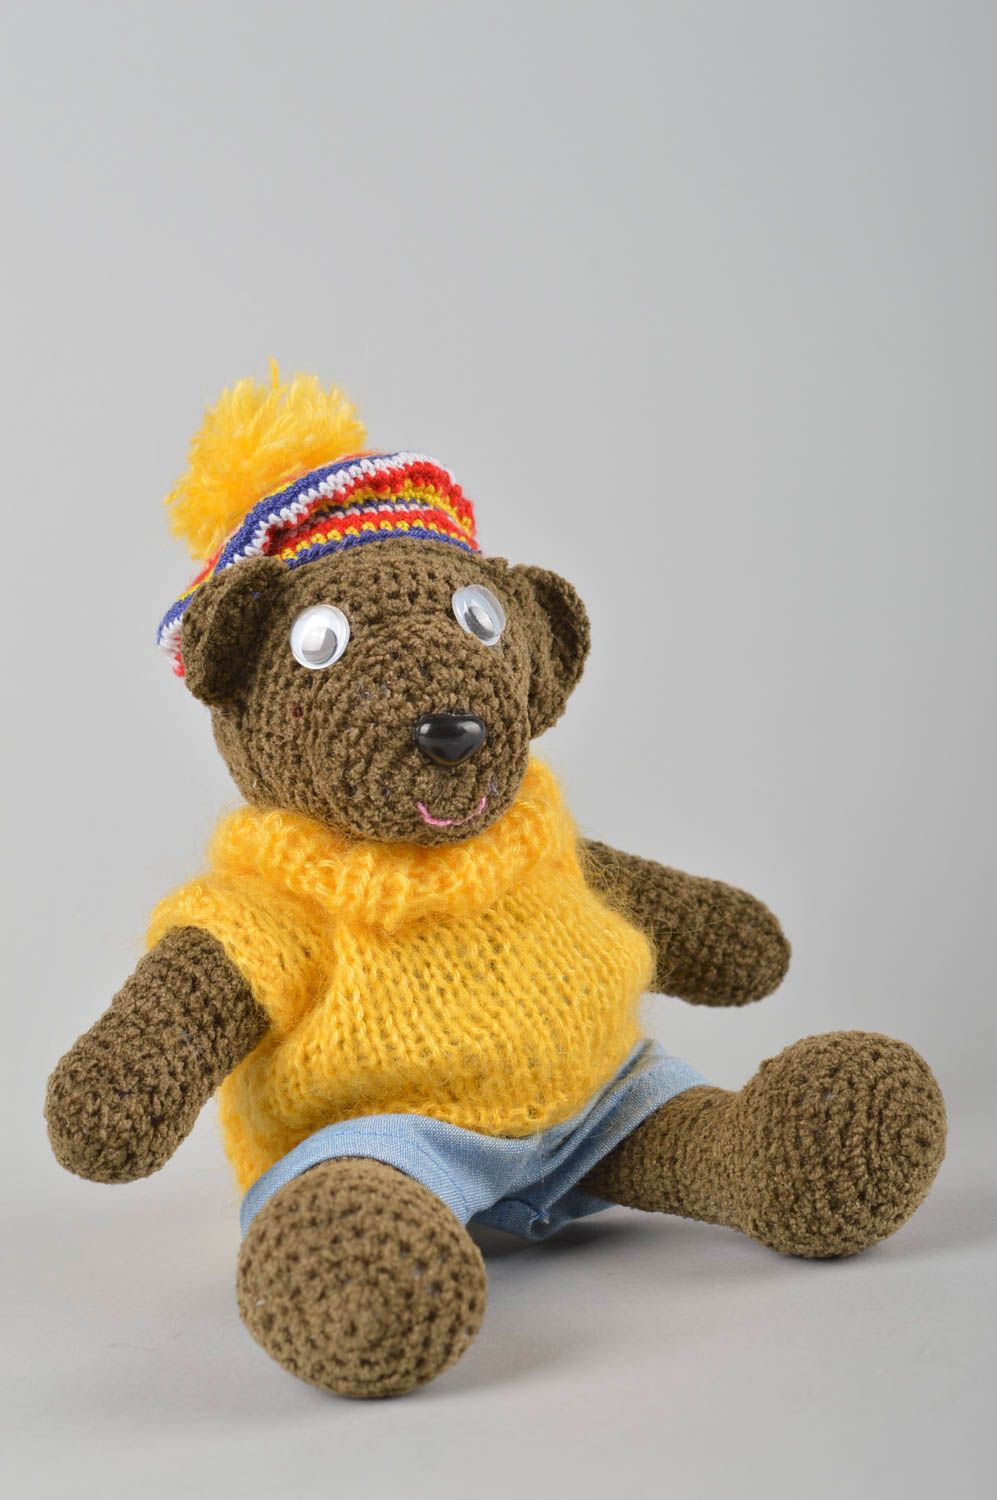 Handmade crocheted soft woolen toy bear designer child toy gift idea children photo 3